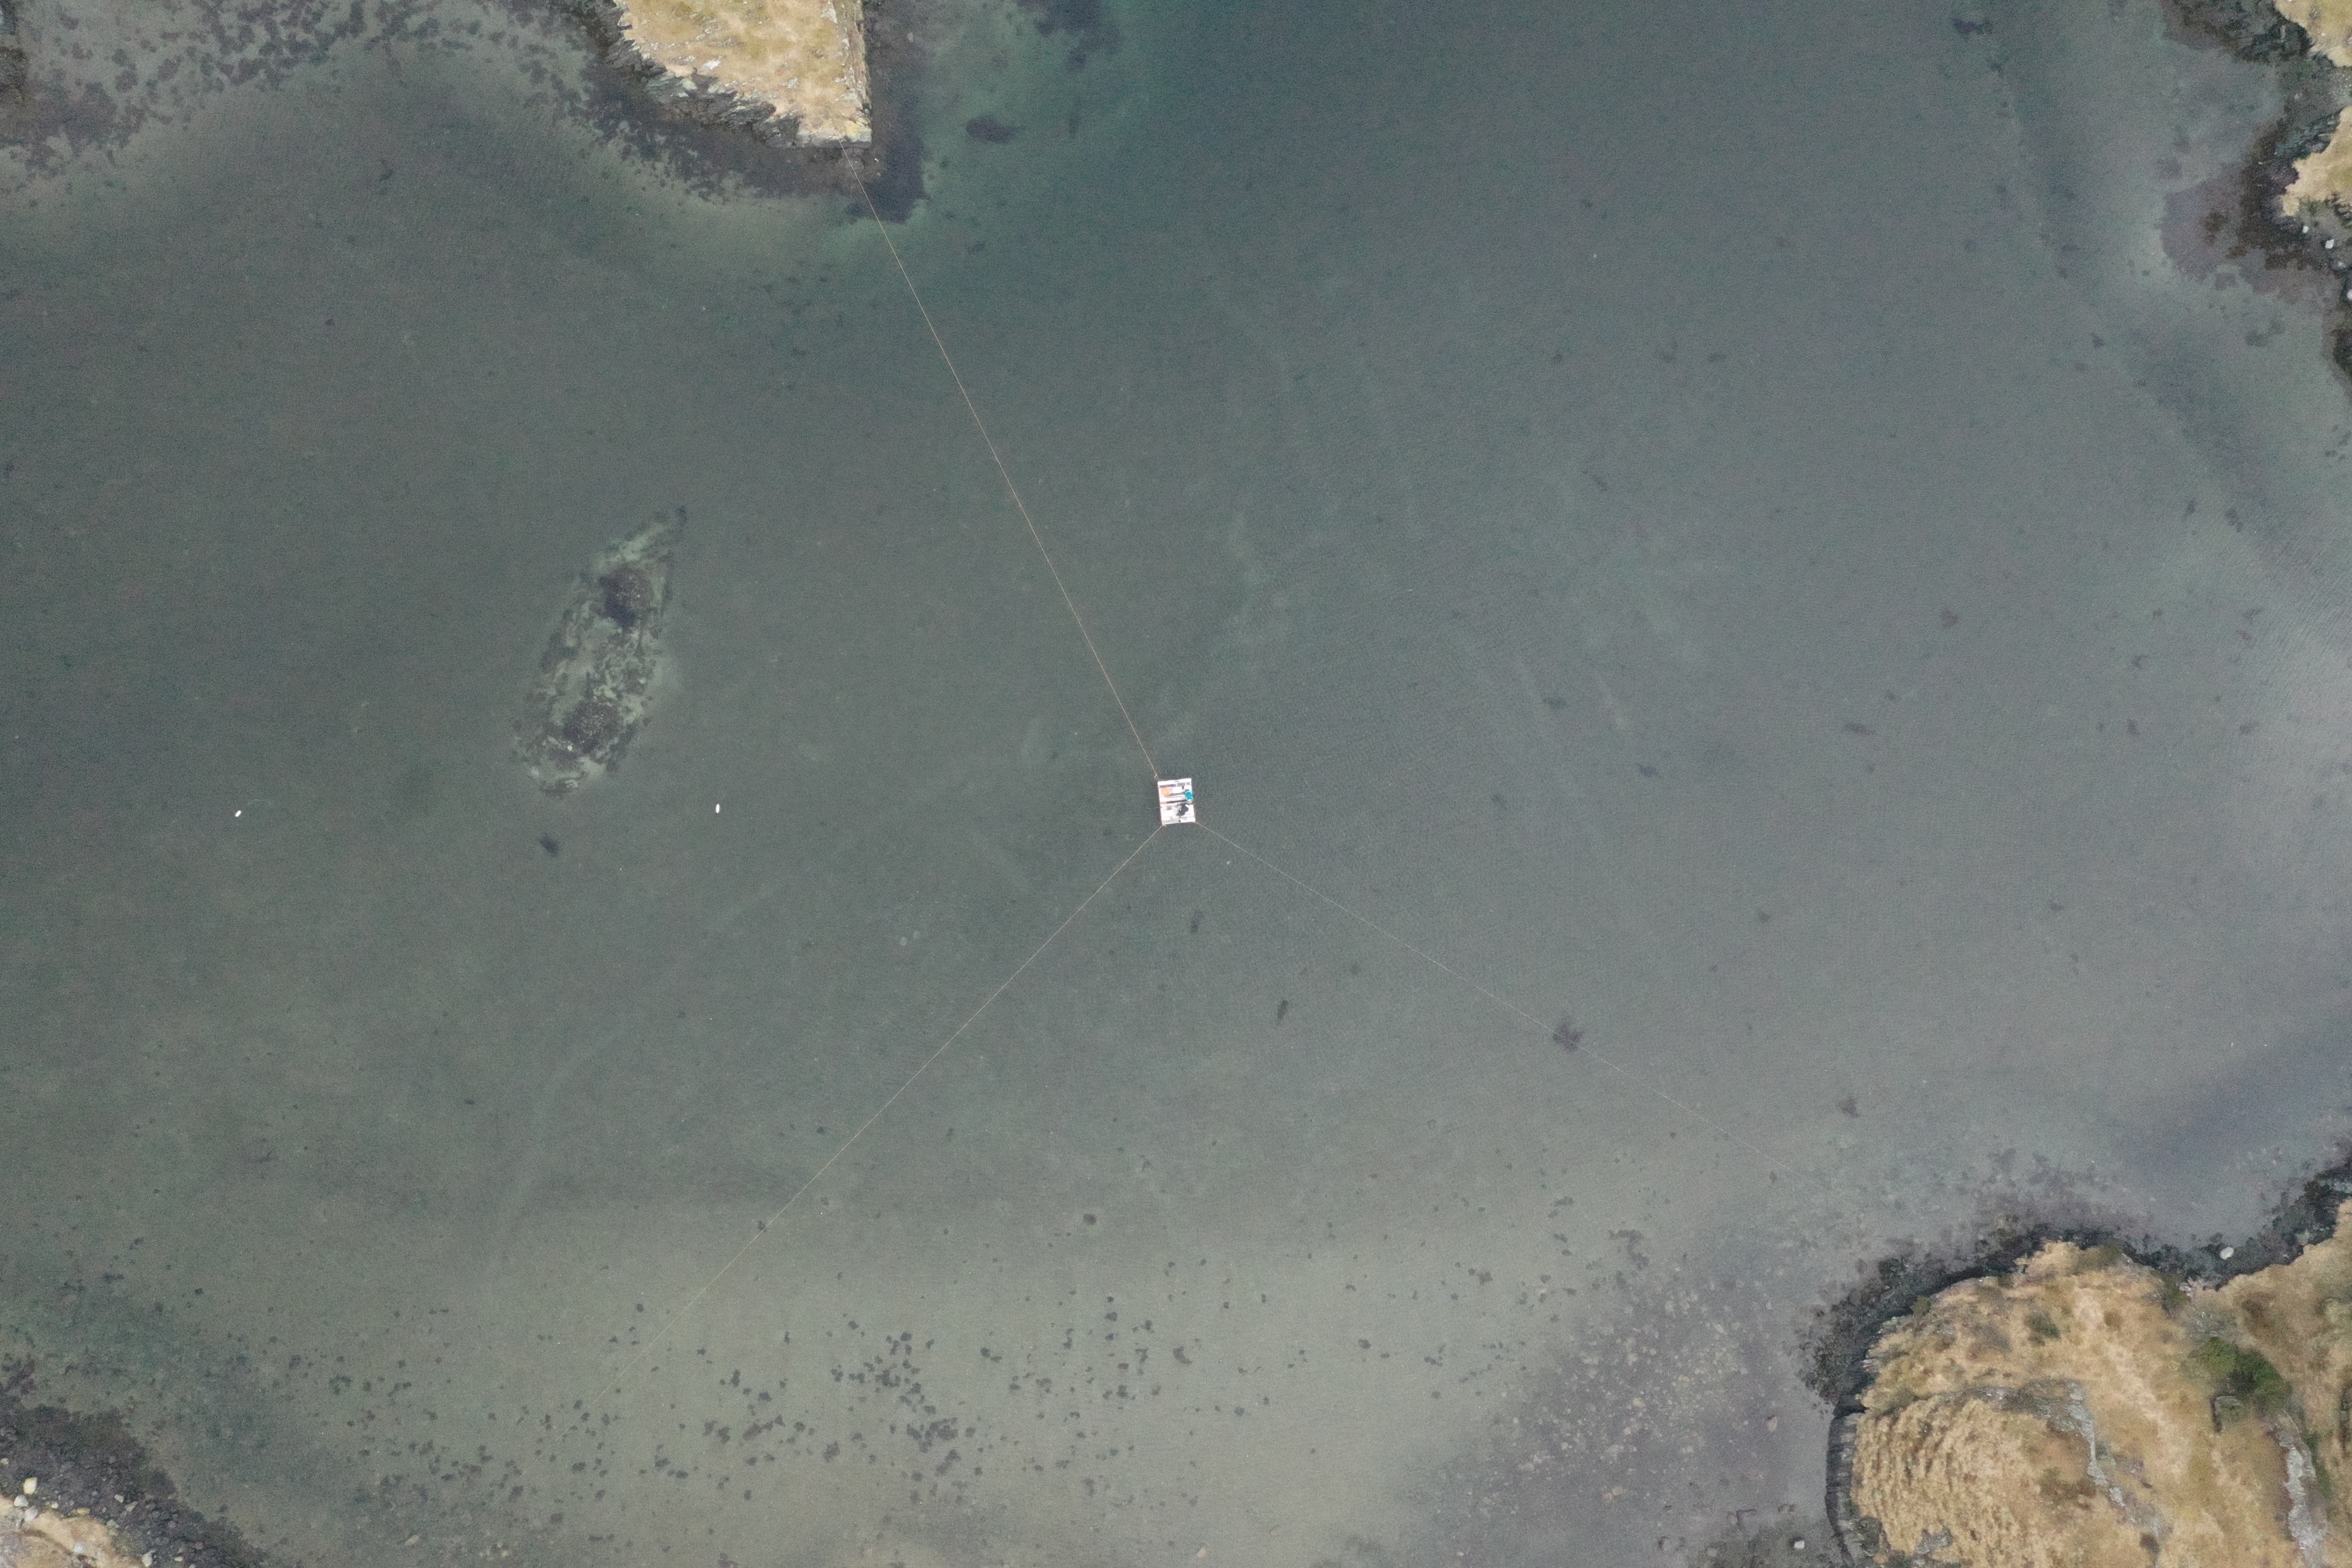 Figur 5. Dronefoto frå Gloppehamn, med Avaldsneskipet til venstre. Midt i fotoet er flåten der geologane jobber med kjerneprøvetaking. Flåten er ankra med tau i land slik at den lett kan halast mellom prøvepunkta. Foto: Arild Skjæveland Vivås.